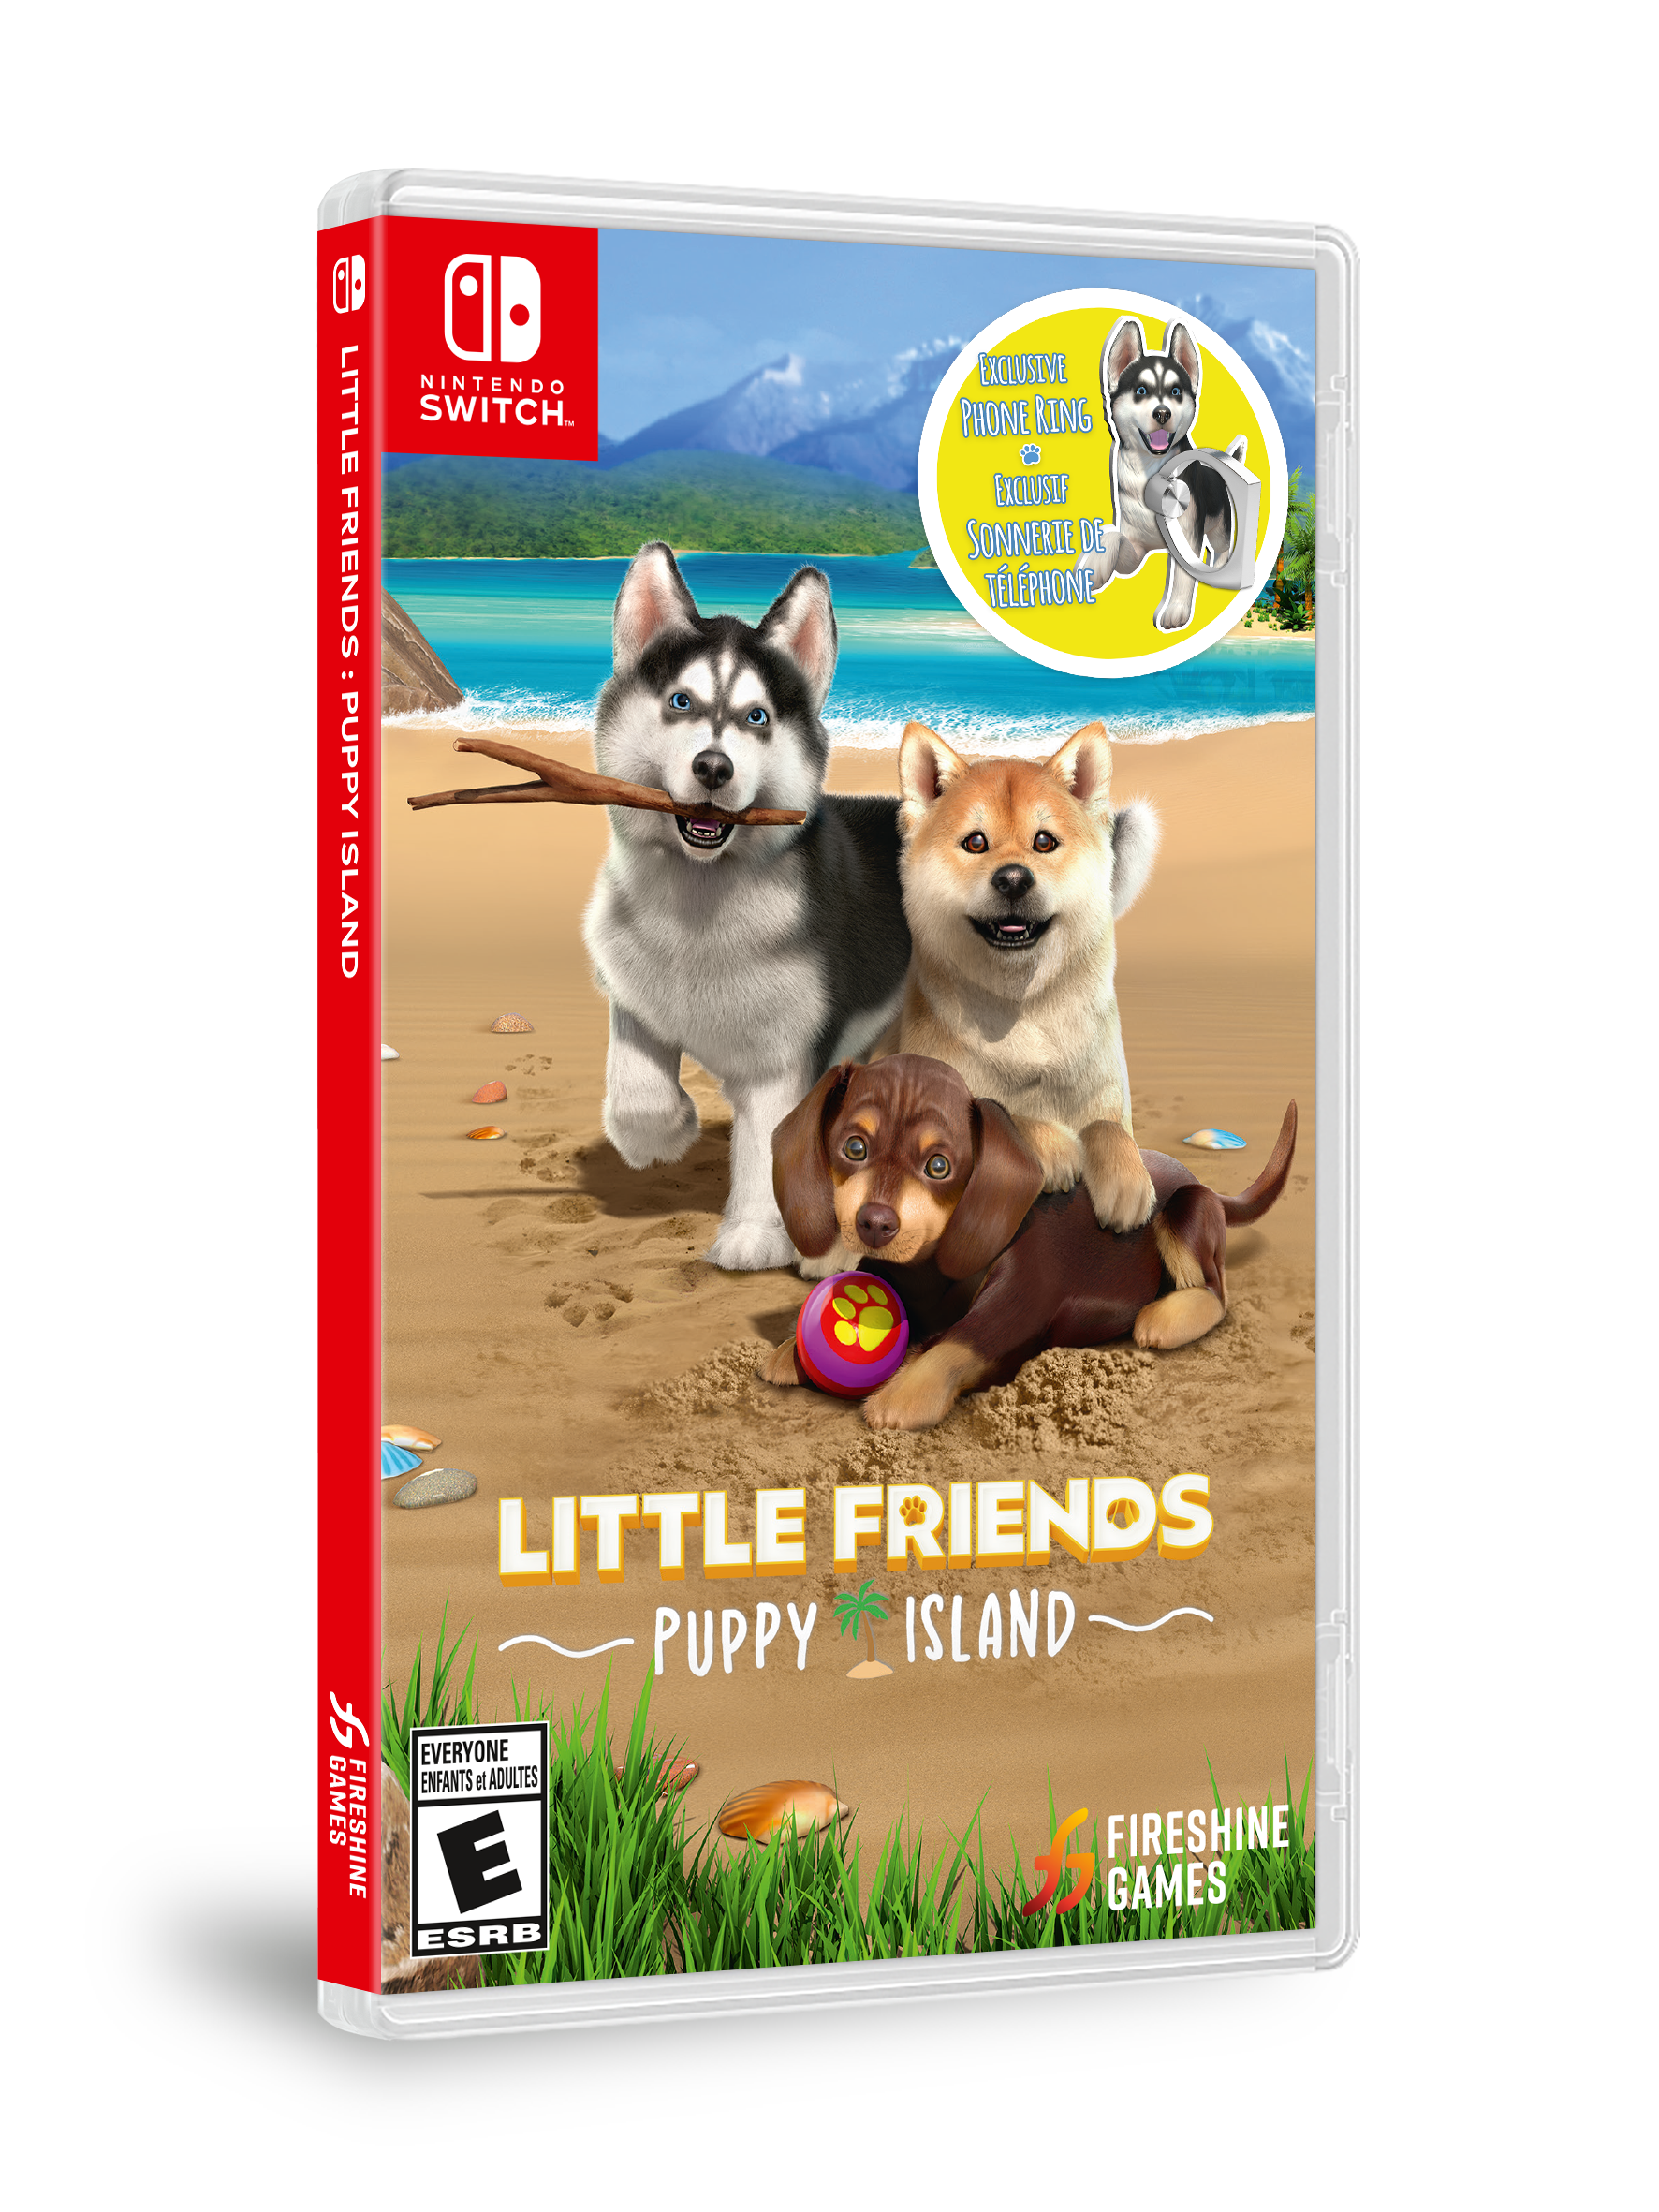 Nintendo Switch LITTLE FRIENDS PUPPY ISLAND Multilingual Pet